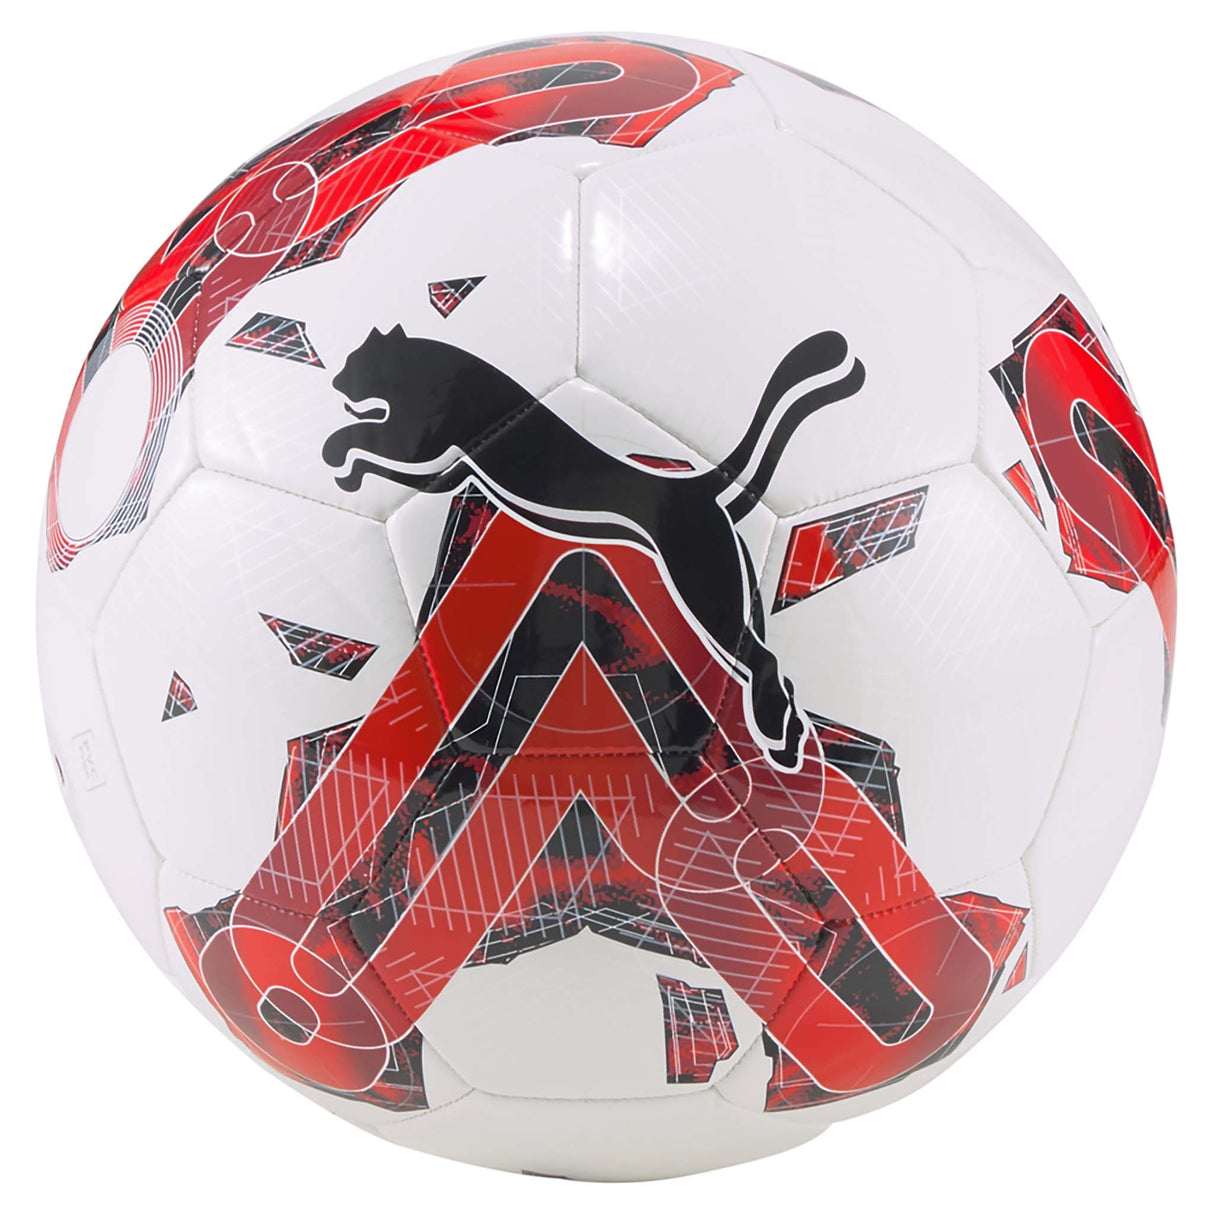 Ballon de soccer Puma Orbita 6 MS - white / red